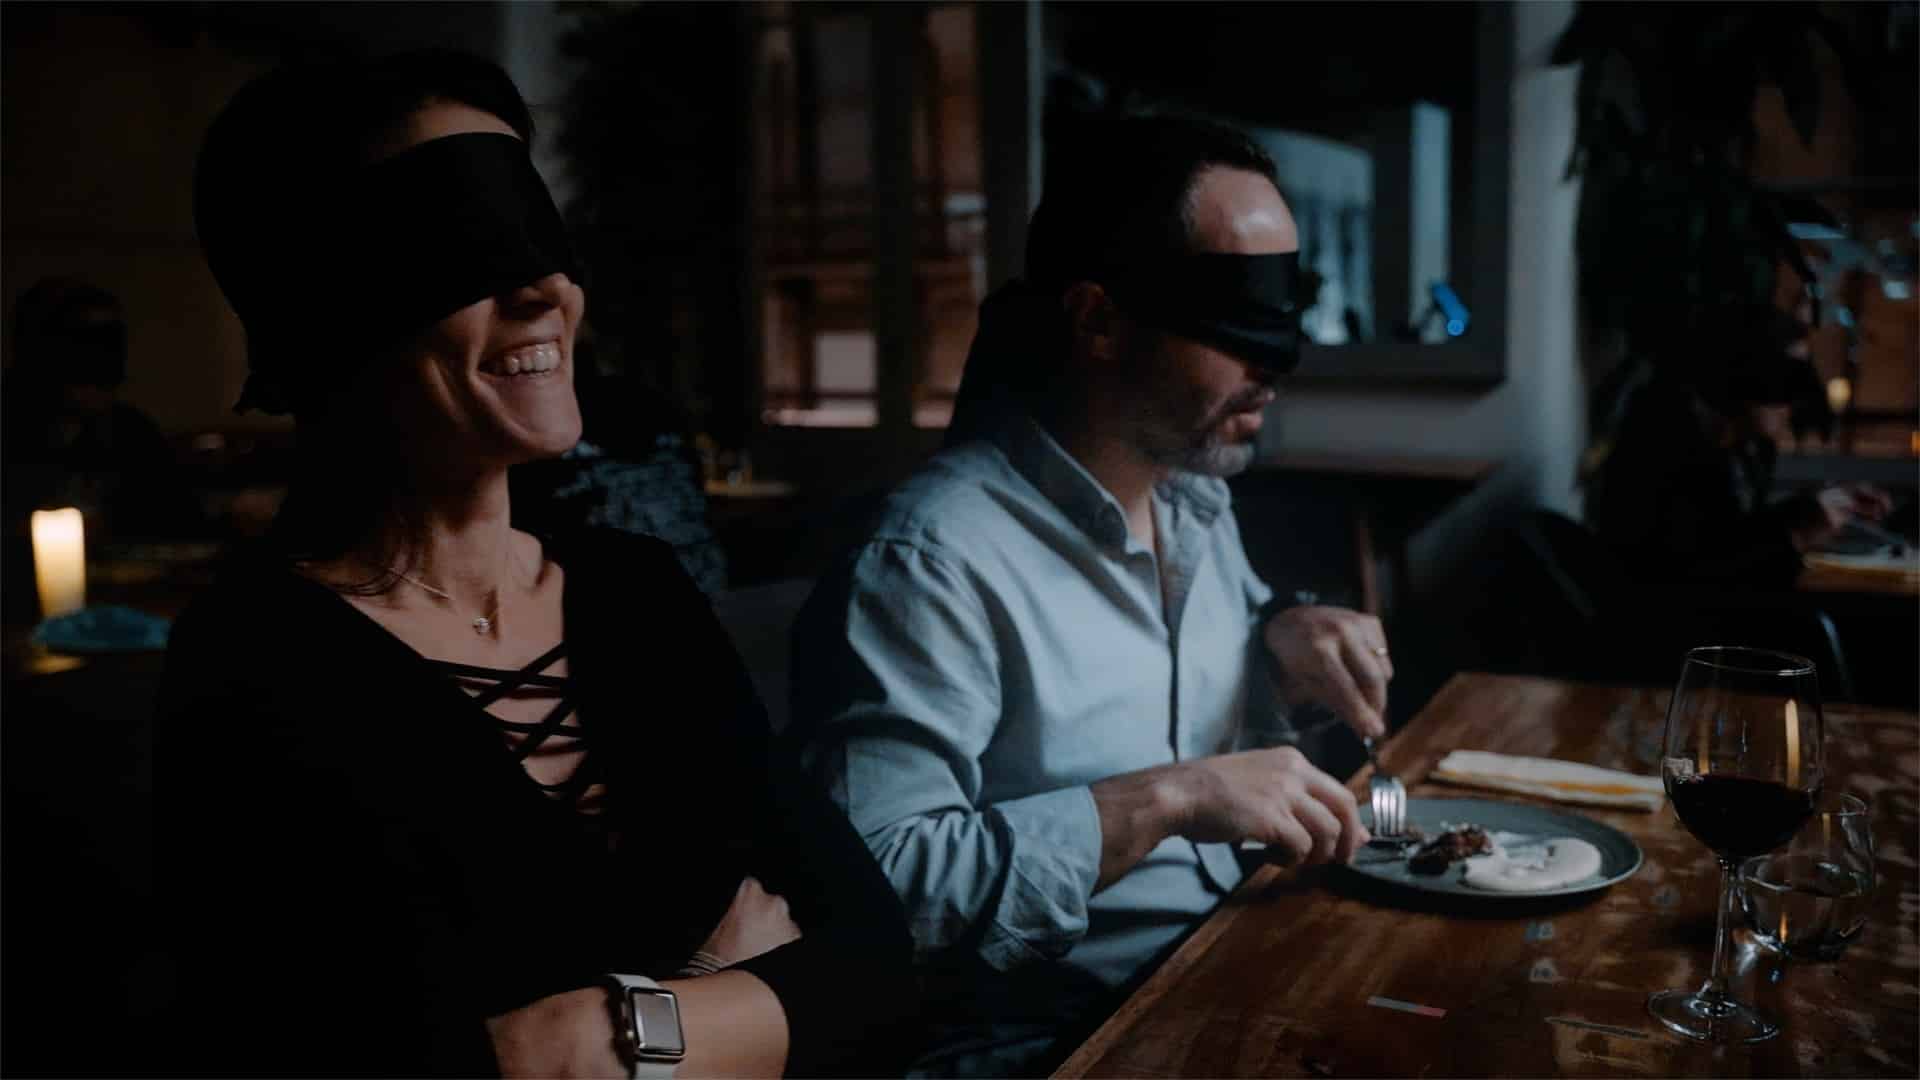 Dining in the Dark: A Unique Blindfolded Dining Experience (Paraíso Taquería y Mezcalería)